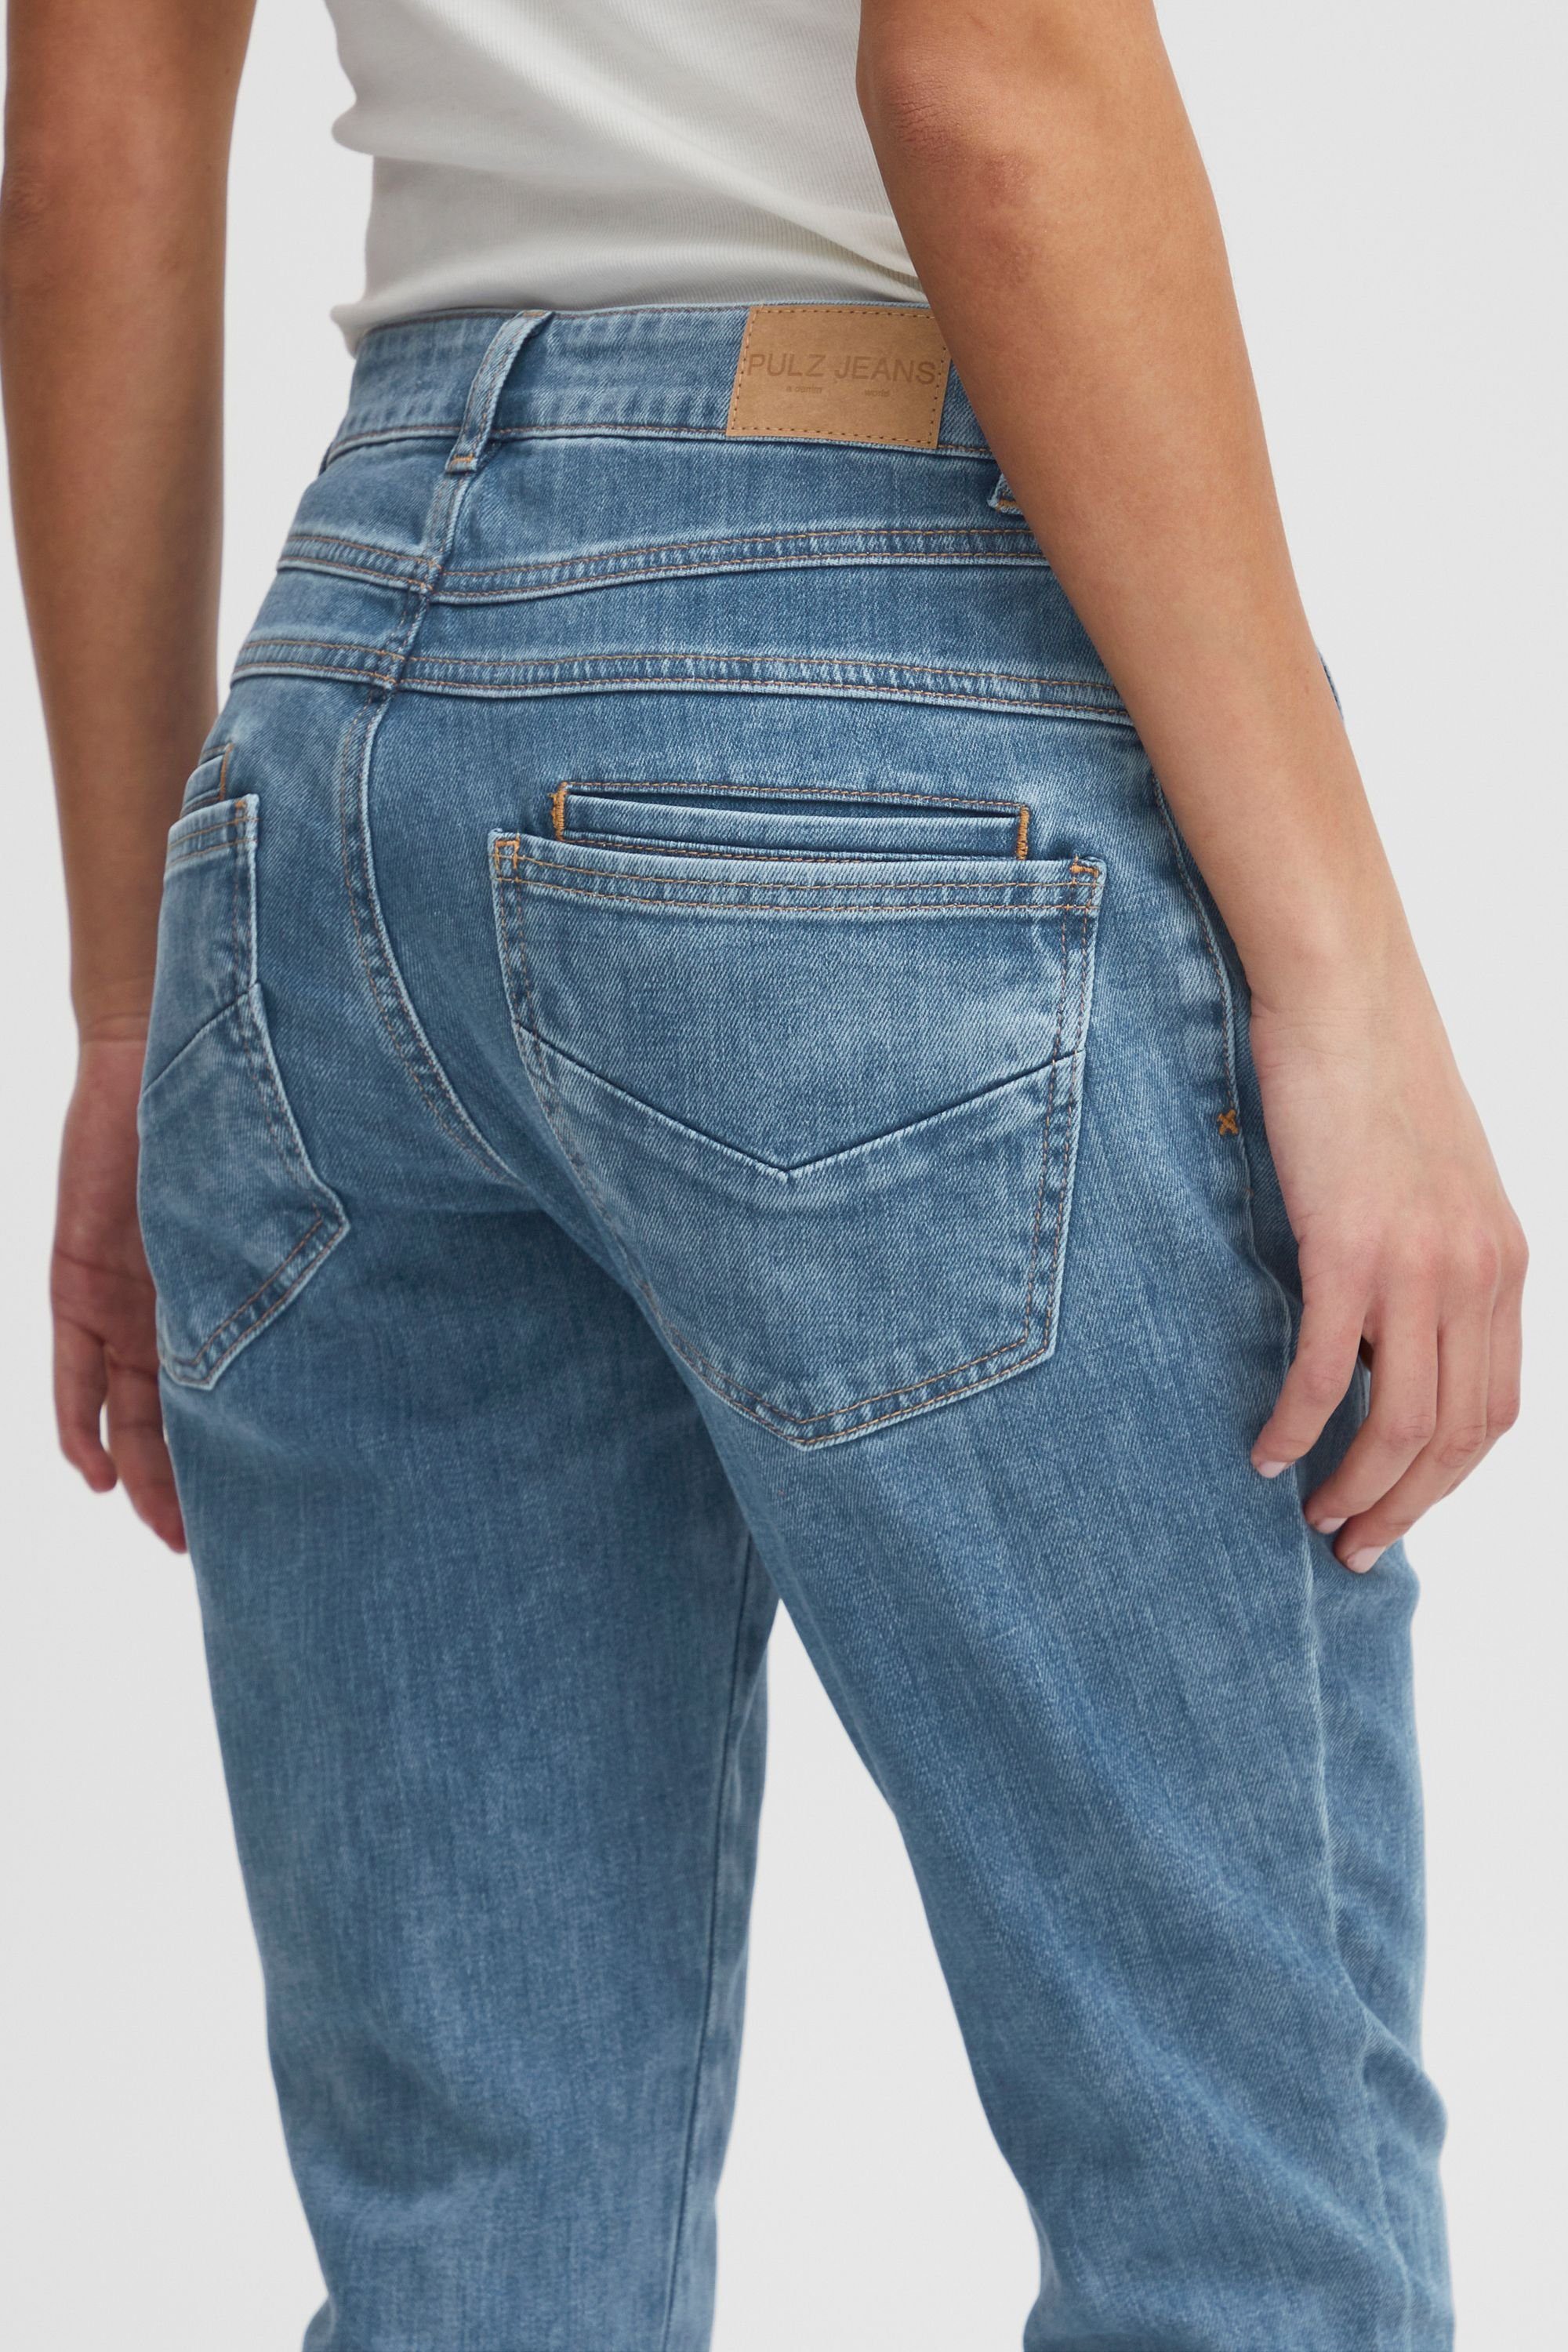 Pulz Jeans 5-Pocket-Jeans PZMELINA Skinny Denim Blue Loose Jeans Leg Light (200008)